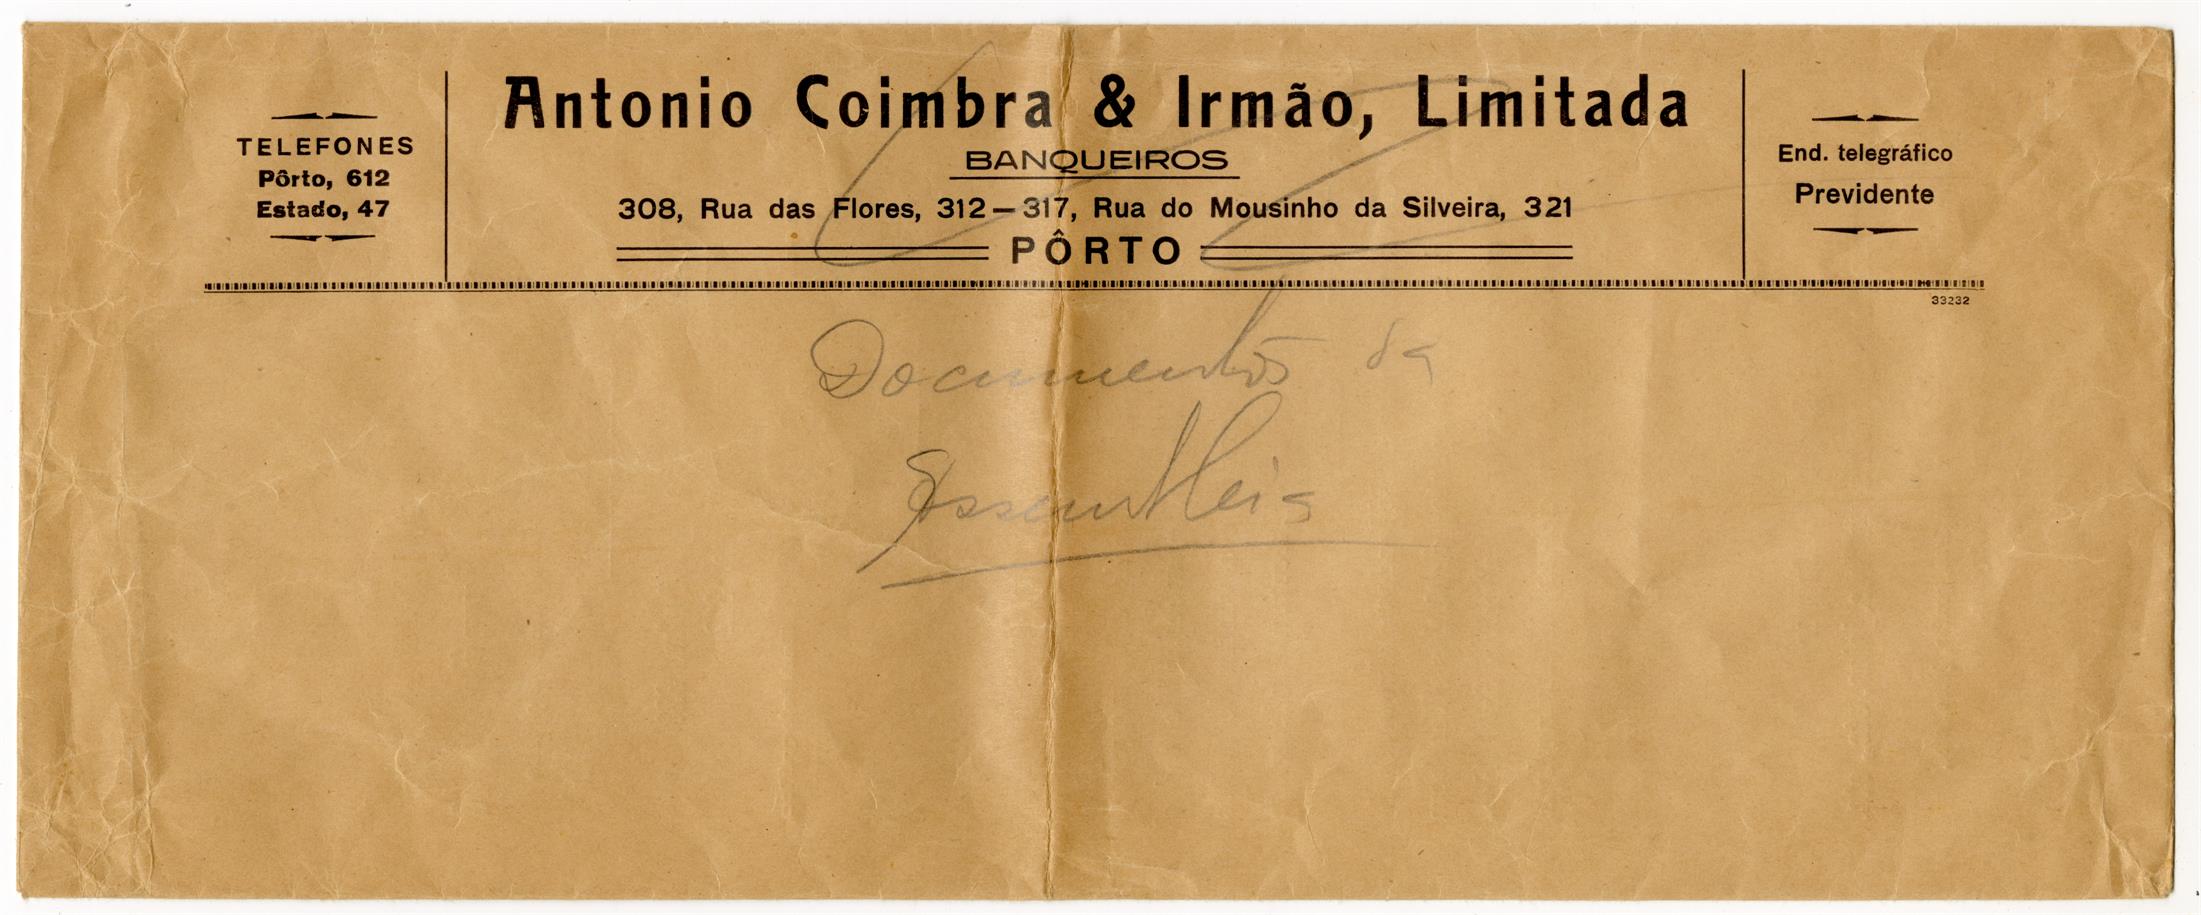 António Coimbra & Irmão, Lda. : banqueiros : compram e vendem cofres fortes de aluguer para guarda de documentos, valores, jóias, etc.